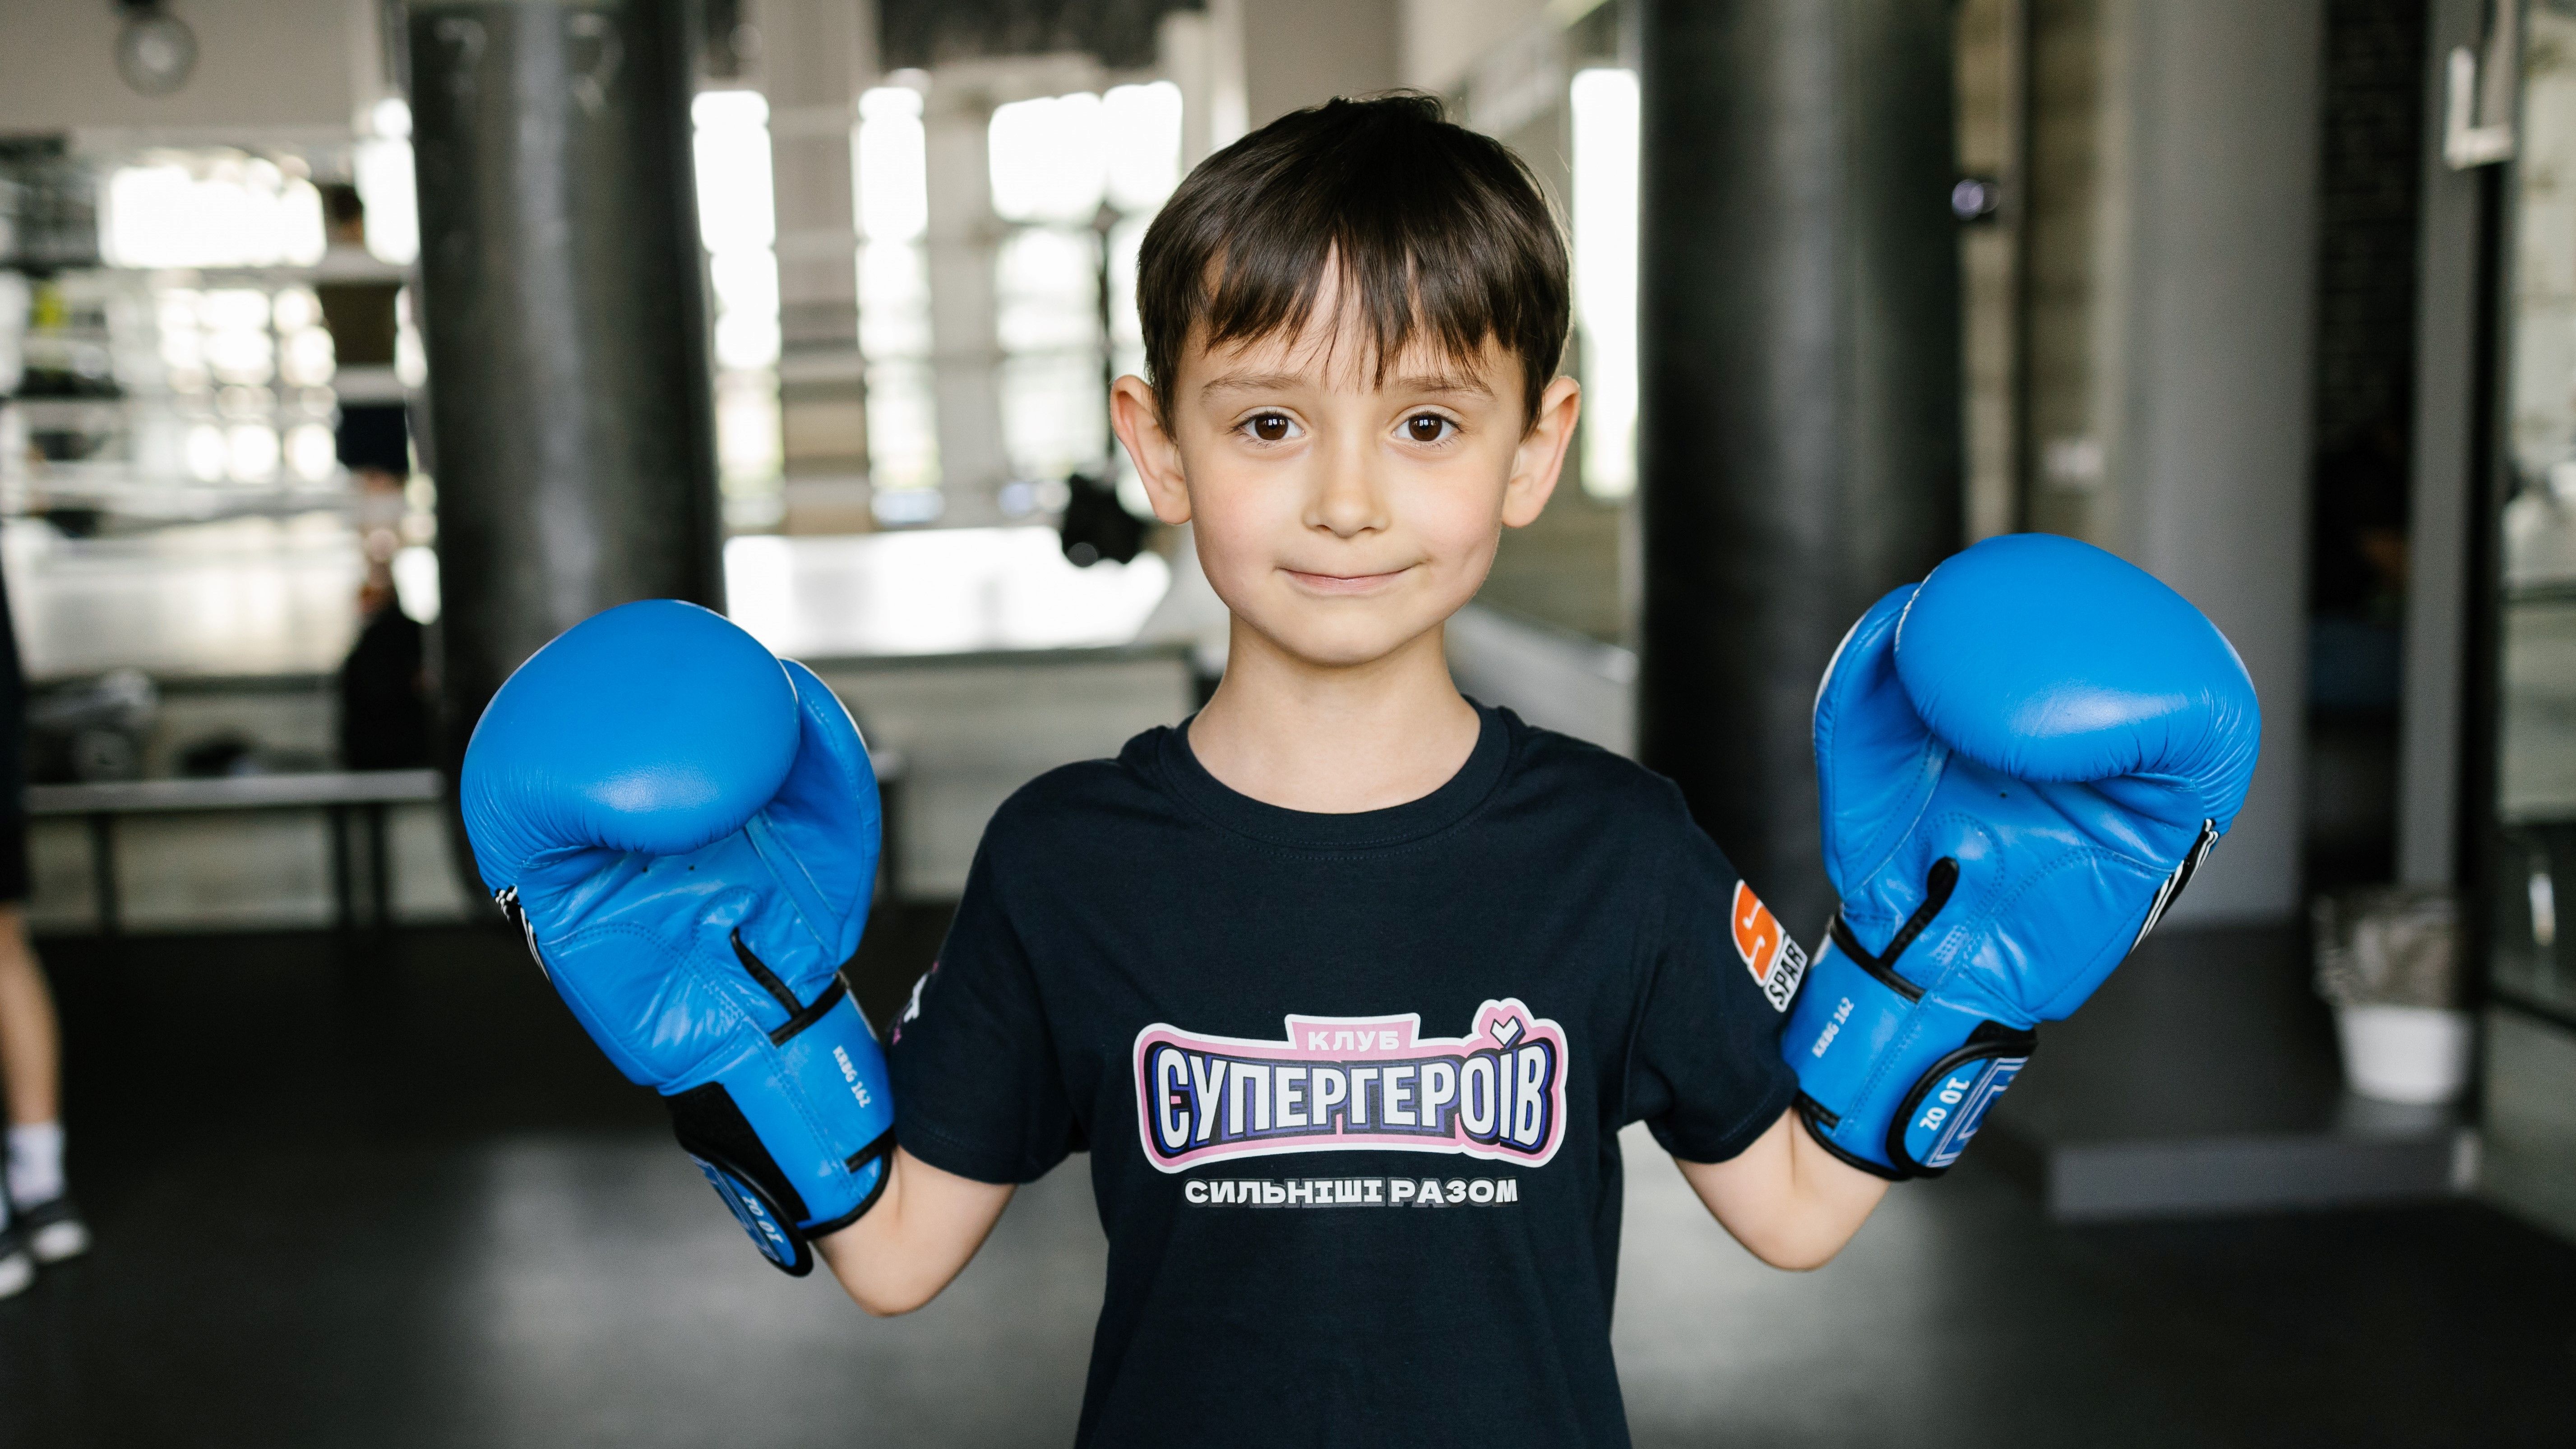 "Учим смелости": детская секция бокса от Favbet Foundation и SpartaBox